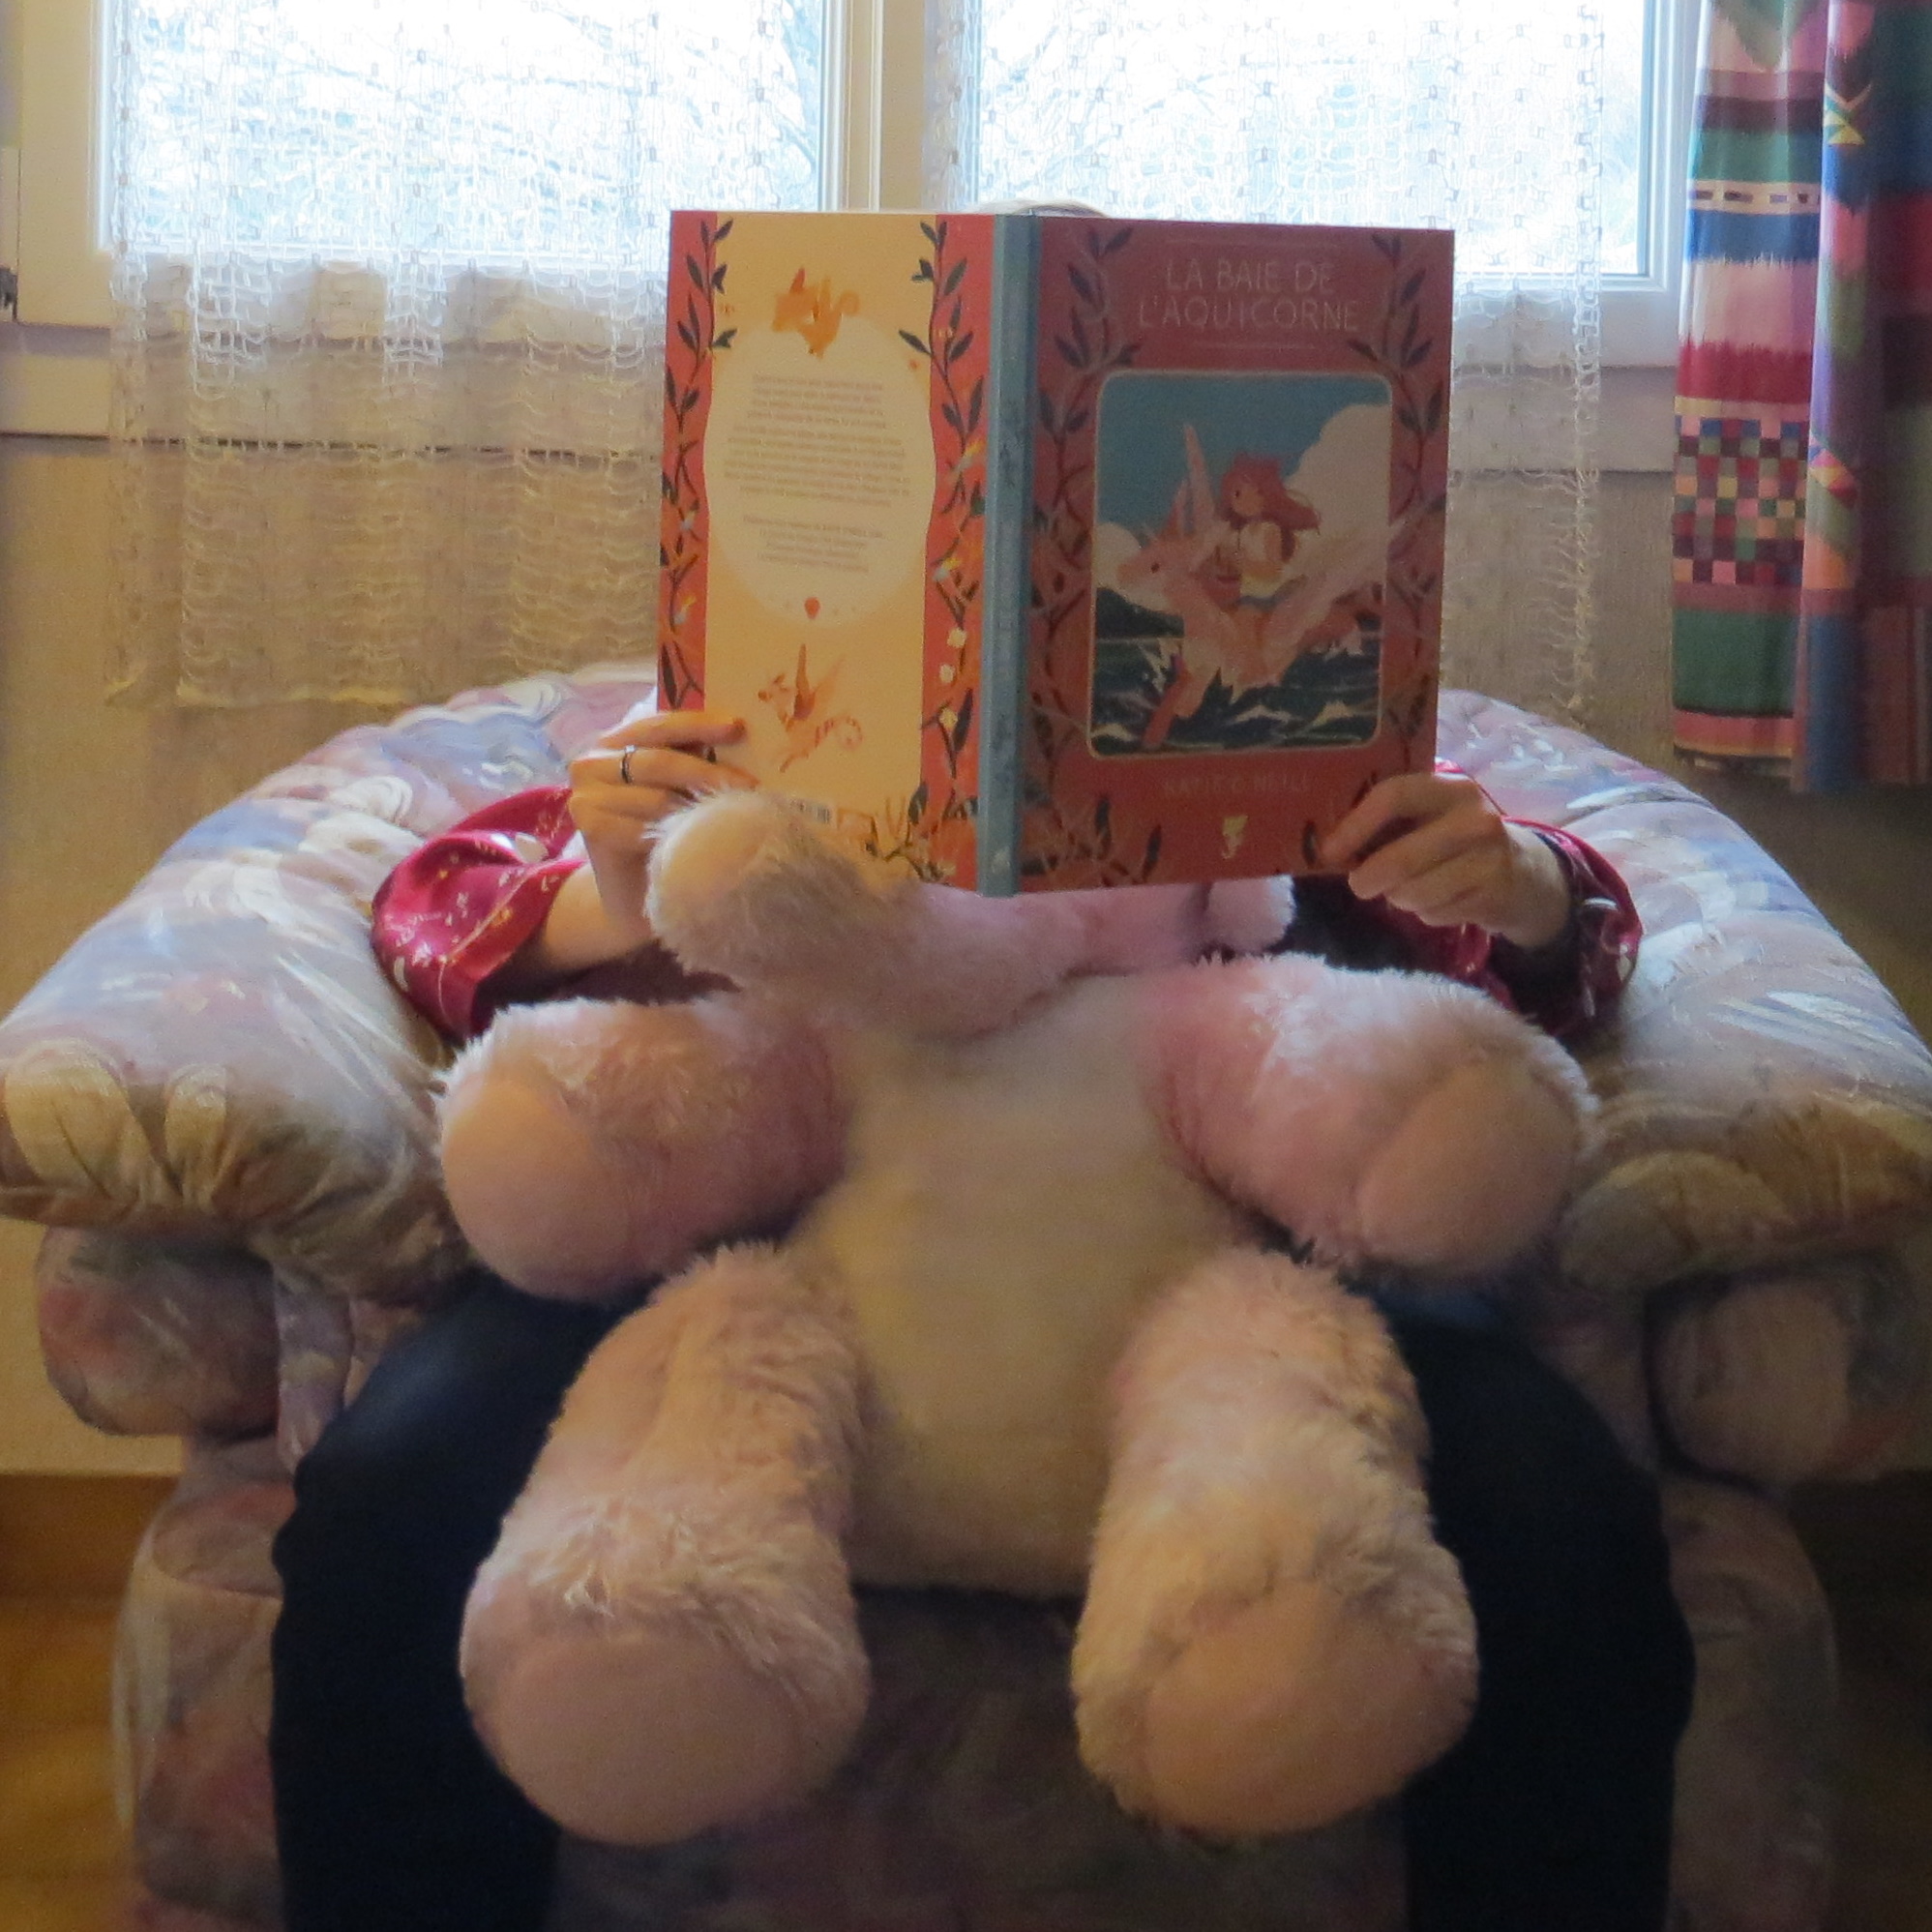 personne en pyjama lisant La Baie de L’Aquicorne de Kay O’Neill dans un fauteuil avec une peluche d'éléphant rose sur les genoux